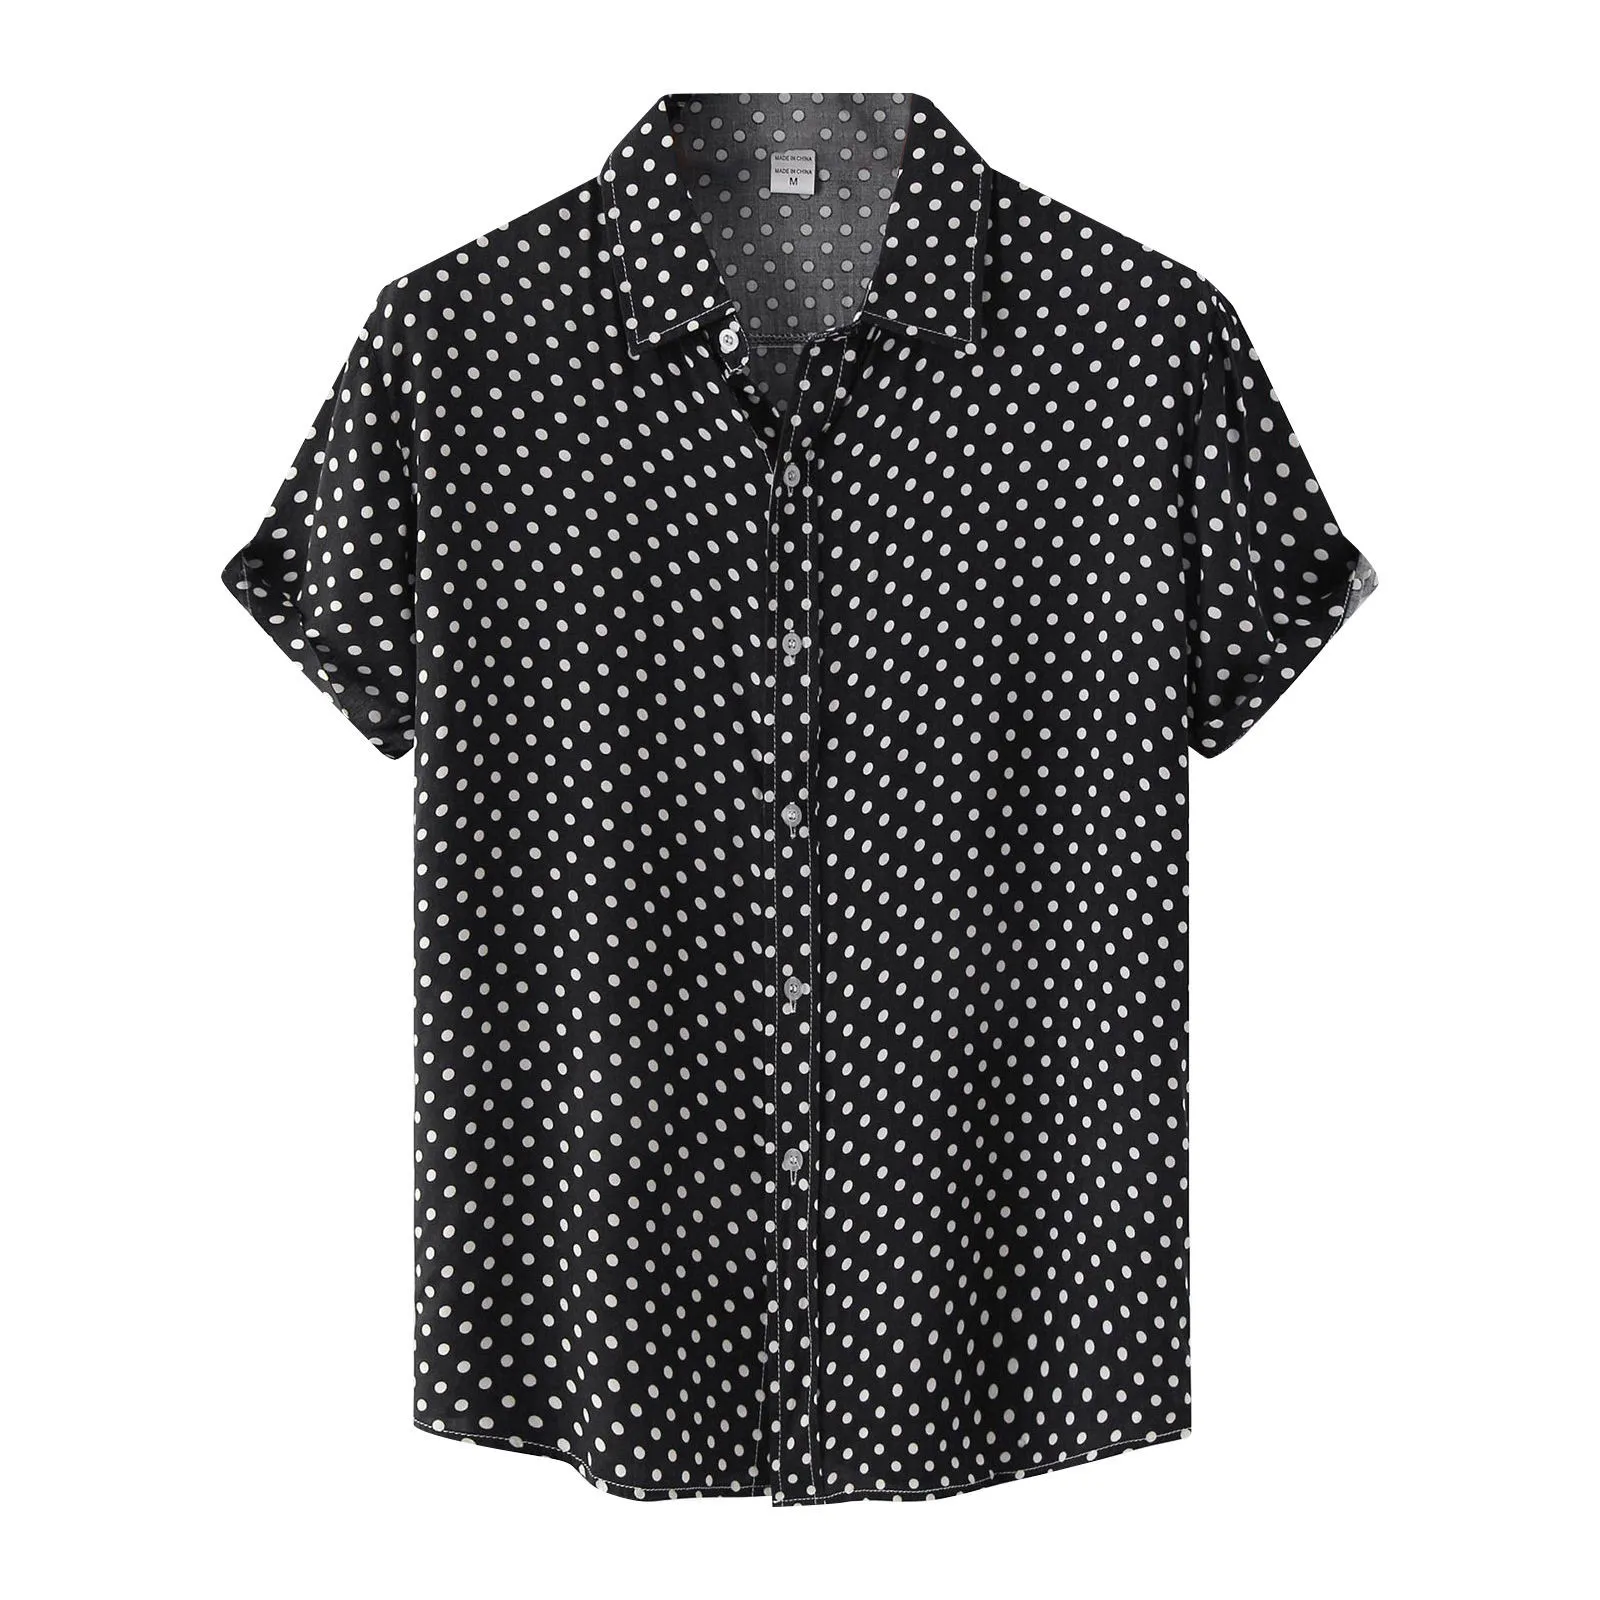 

Men'S Polka Dot Print Shirts Summer Leisure Vacation Printed Blouse Tops Daily Fashion Causal Lapel Short Sleeve Shirts